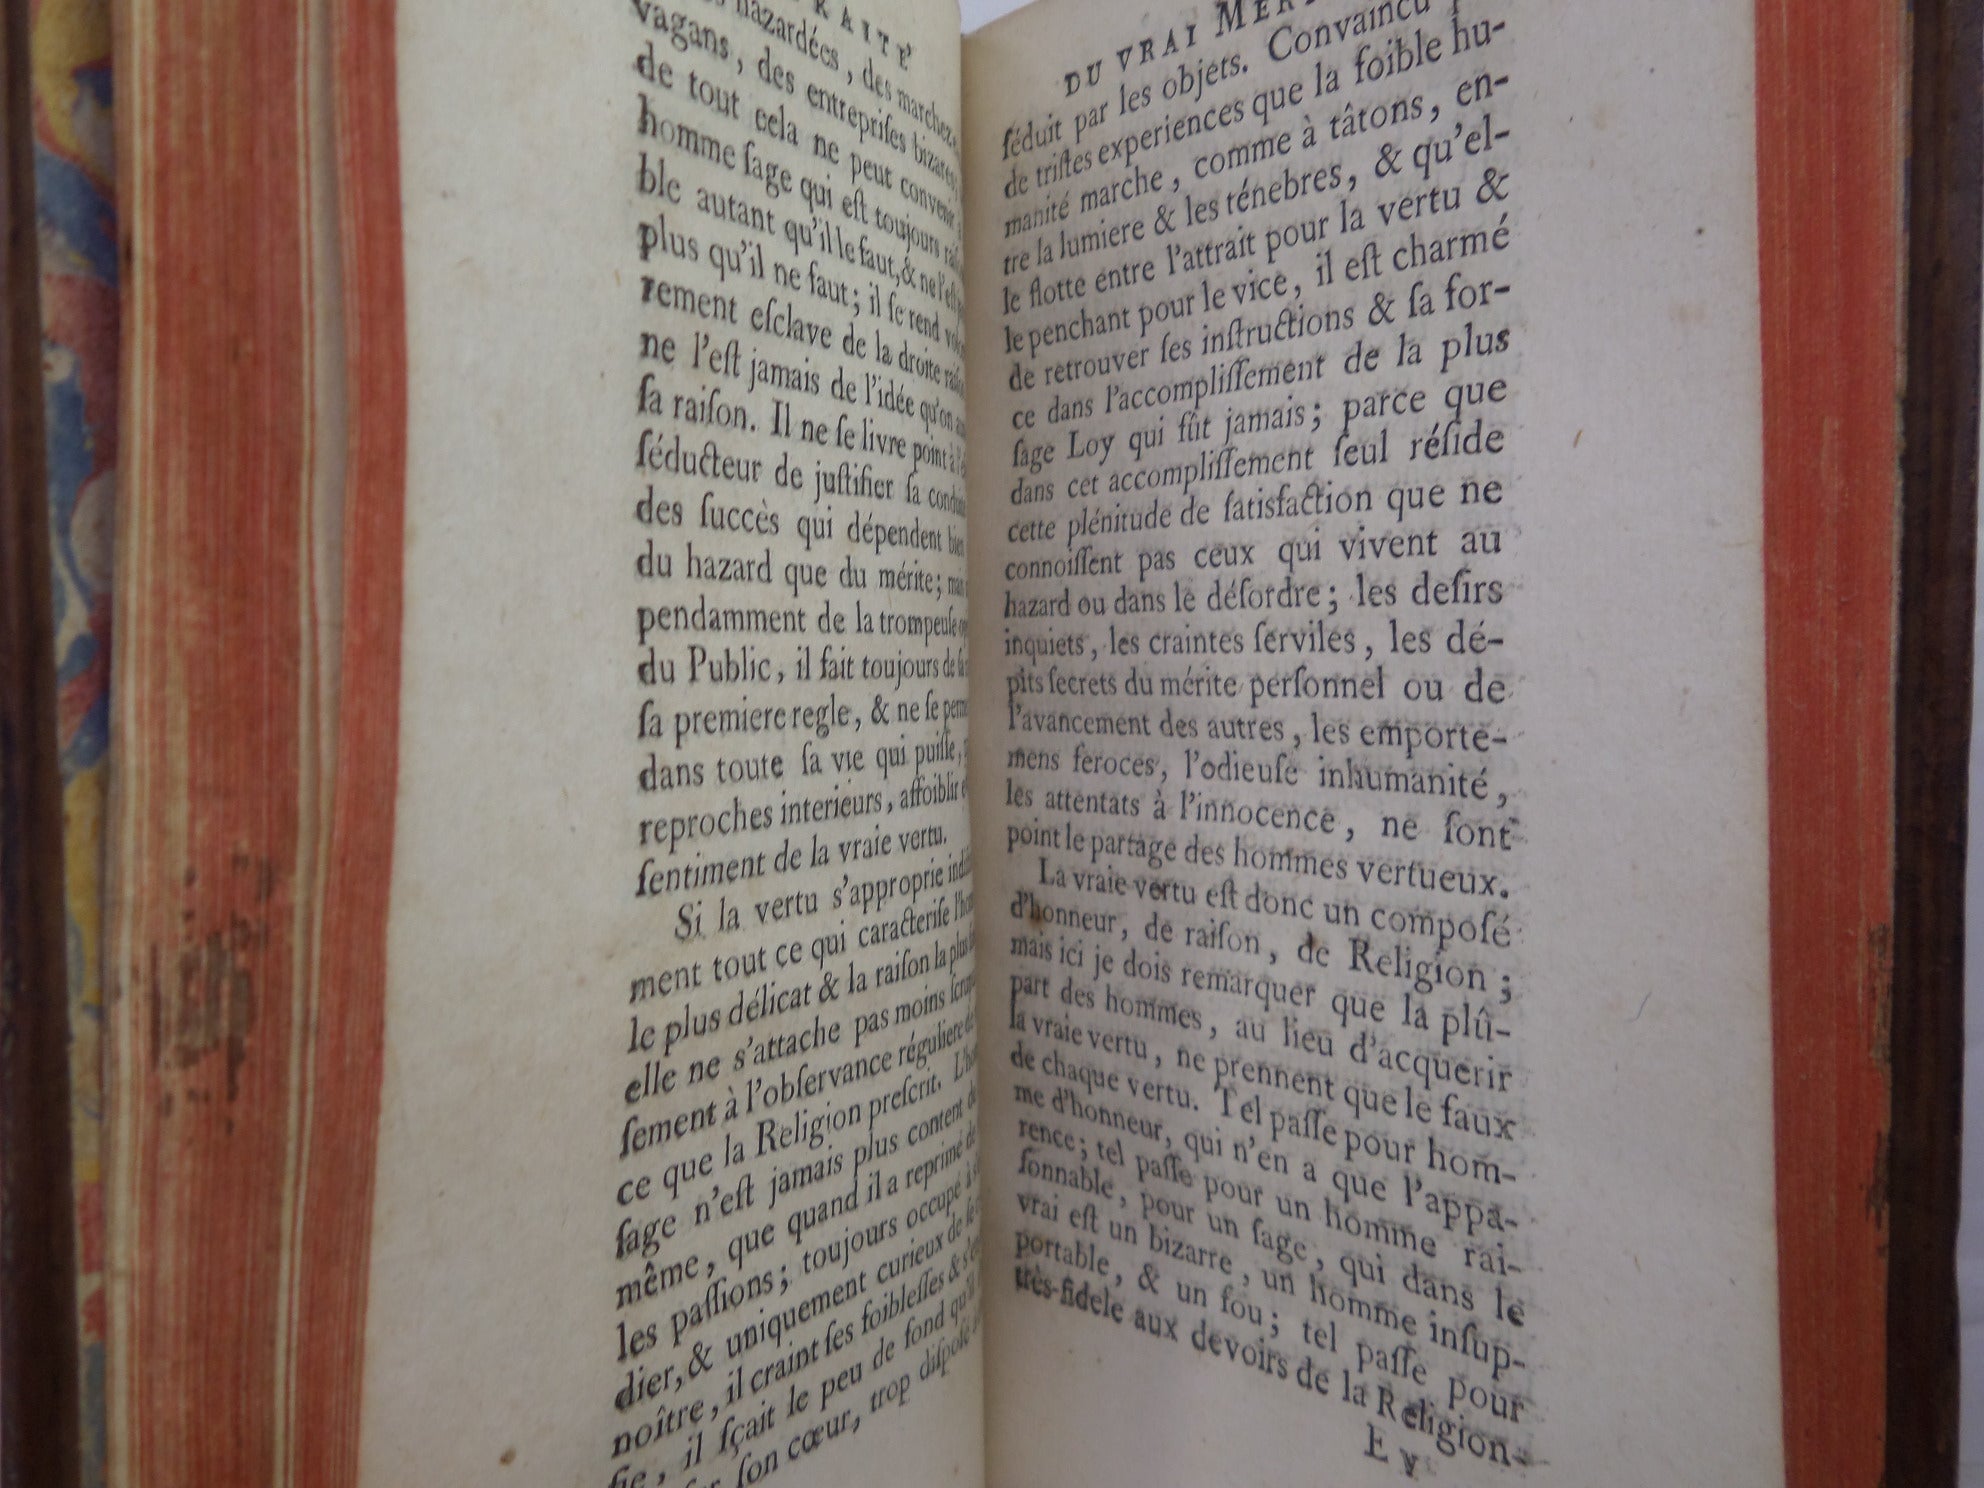 TRAITE DU VRAI MERITE DE L'HOMME 1737 LE MAITRE DE CLAVILLE, LEATHER BOUND